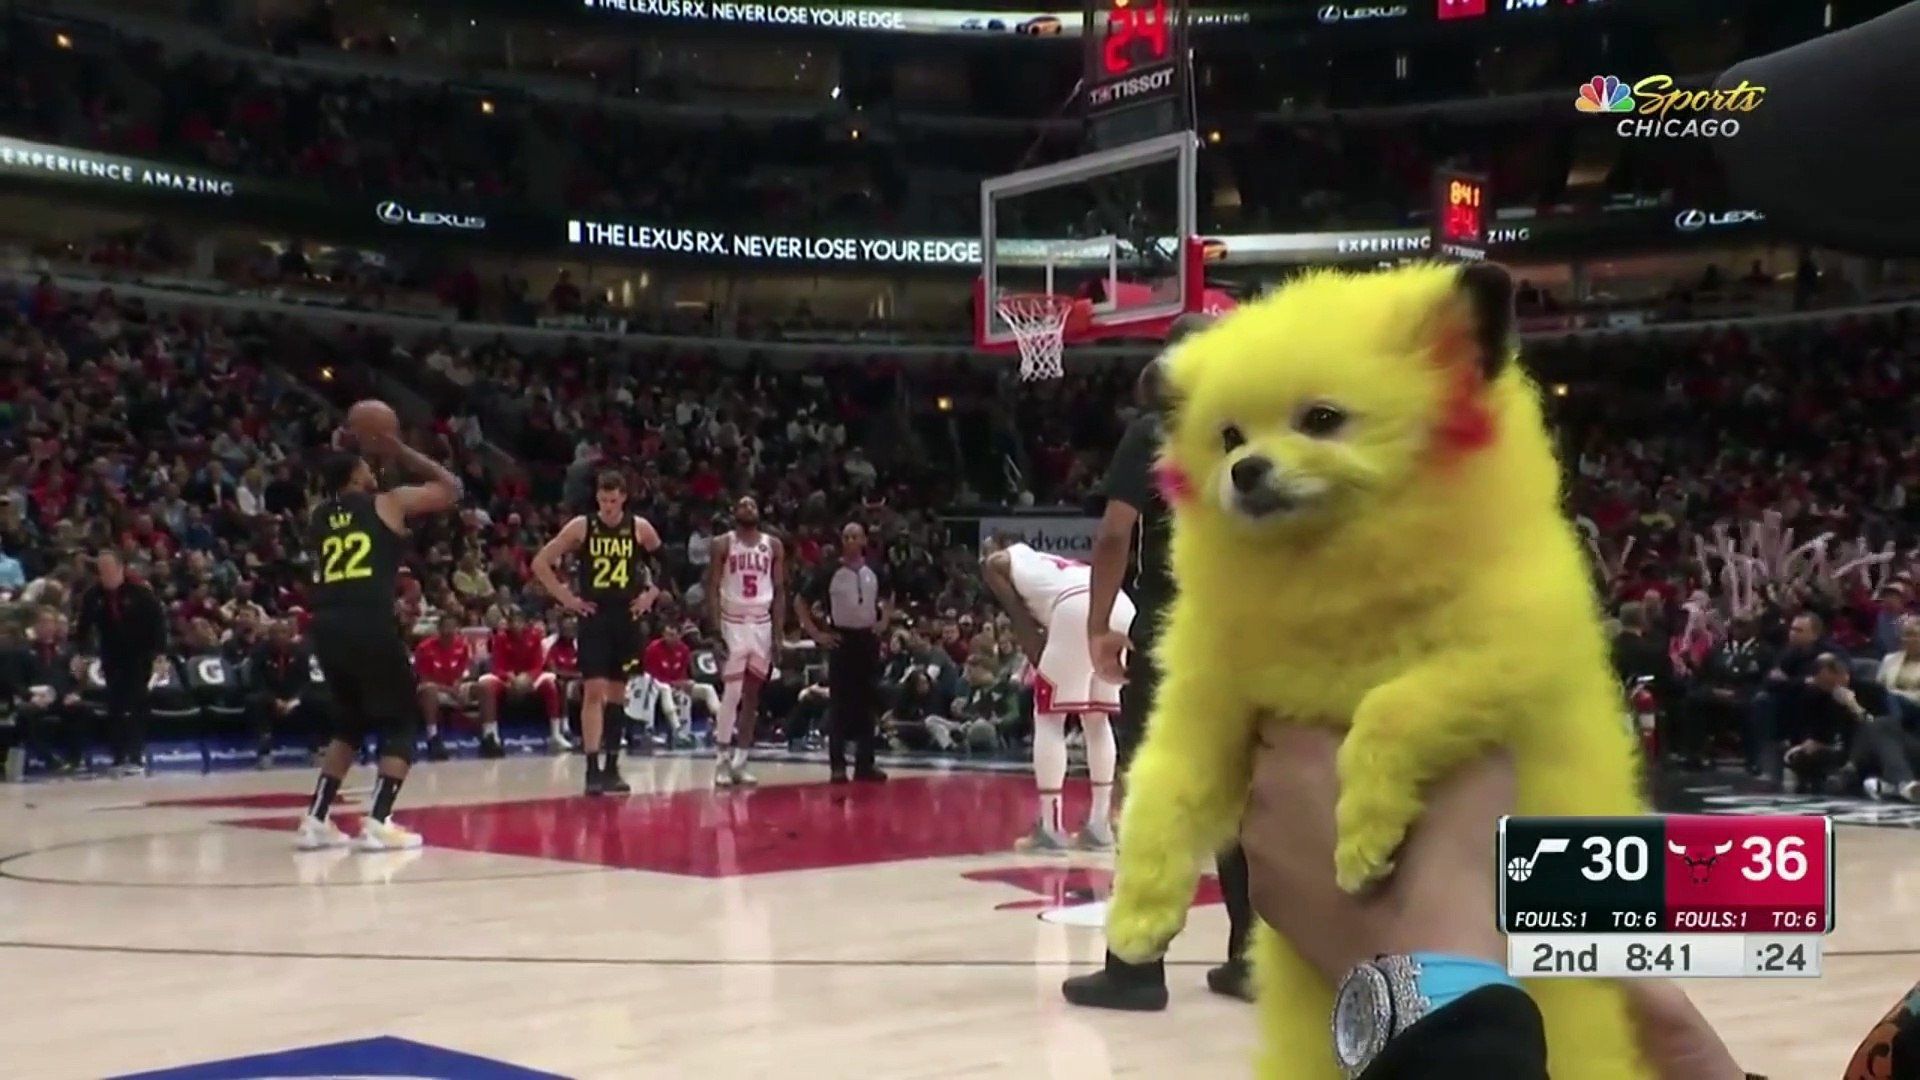 Un aficionado tiñe a su perro como Pikachu, lo lleva a la NBA y se mete en un lío